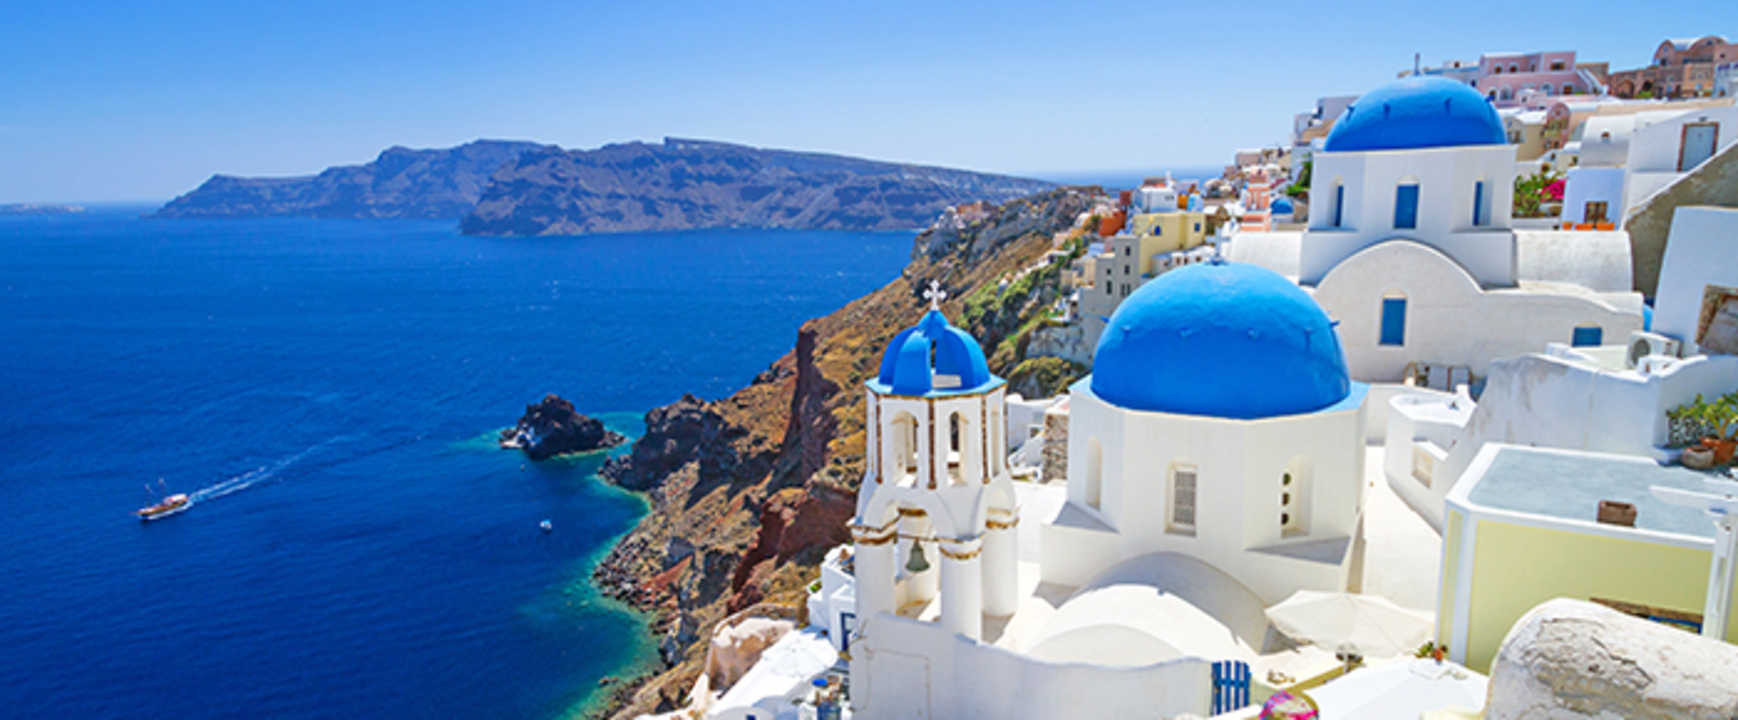 Τέλος ο τουρισμός στην Ελλάδα: Με lockdown, υποχρεωτικές μάσκες και «κρουσματολογία»… δεν θα έρθει κανείς